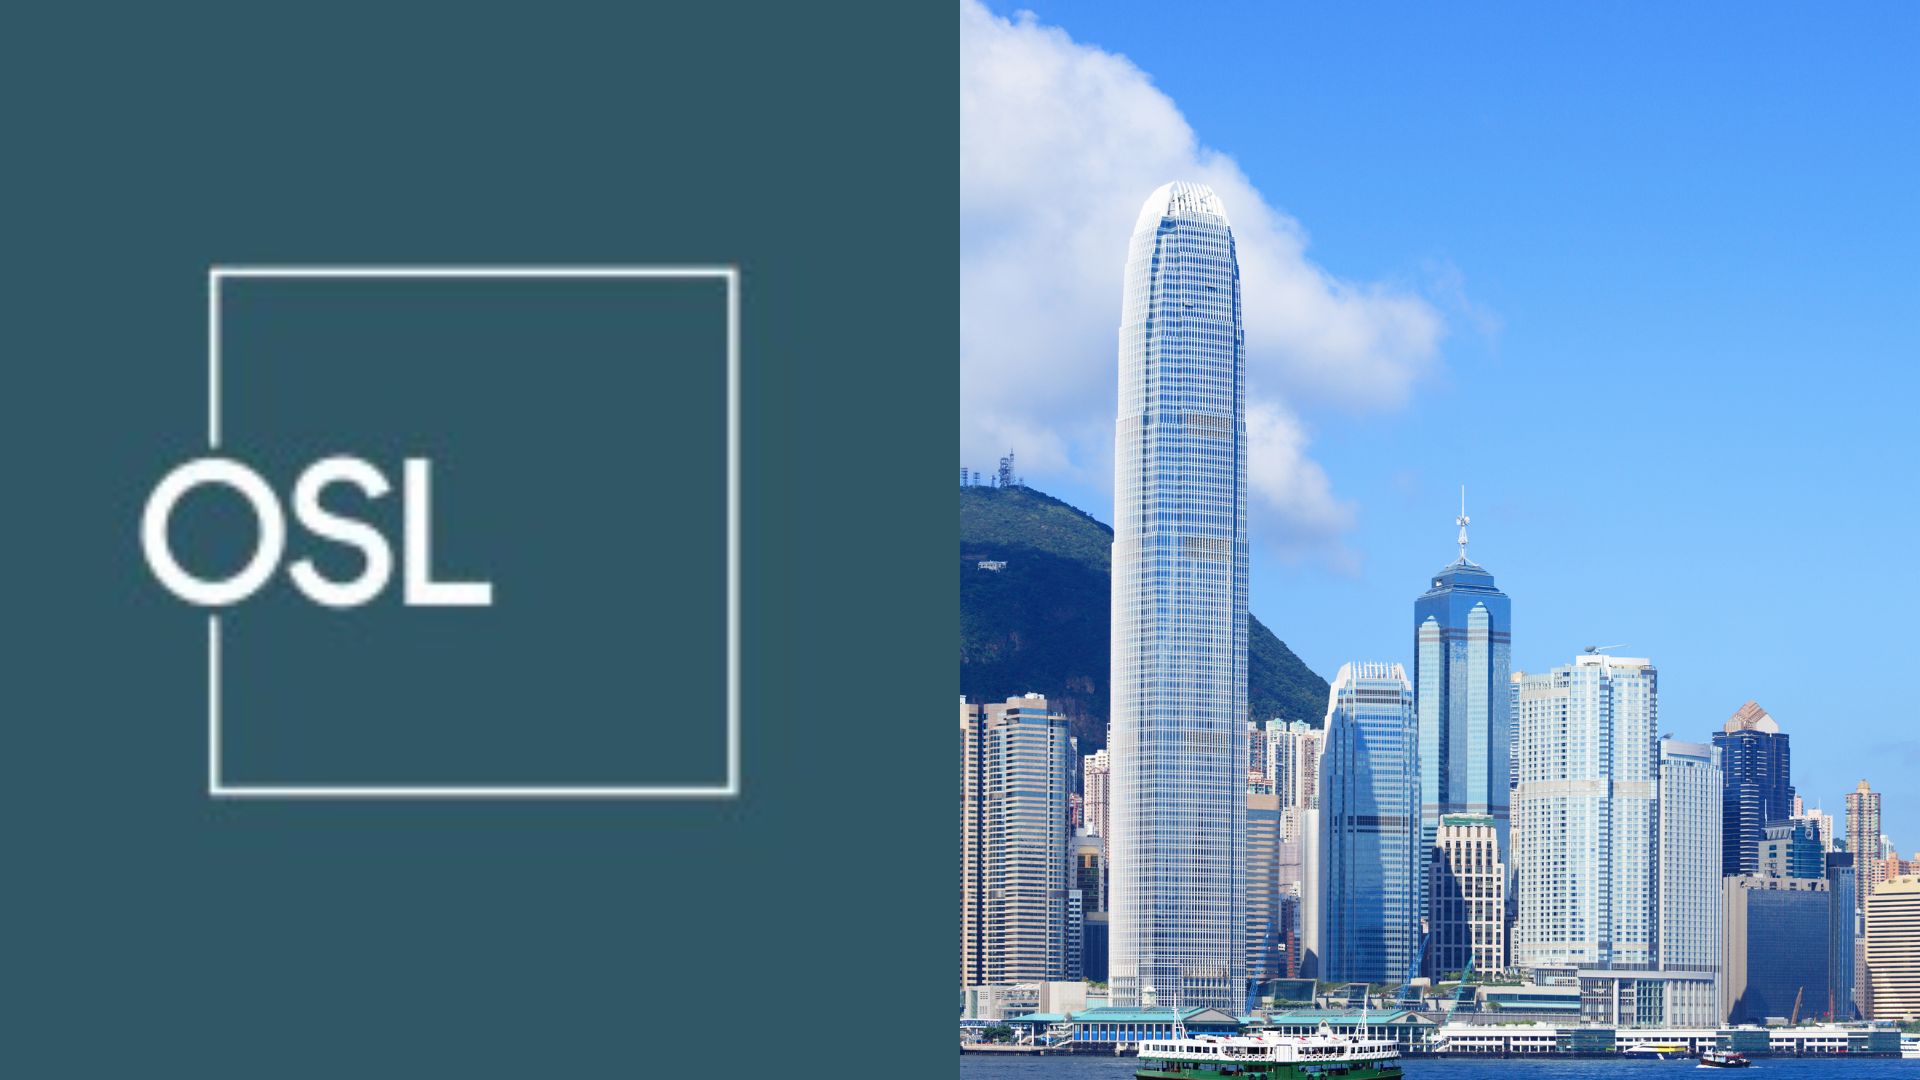 ہانگ کانگ کے OSL اثاثہ جات مینجمنٹ نے بلاک چین، ویب 3، مصنوعی ذہانت پلیٹو بلاکچین ڈیٹا انٹیلی جنس میں سرمایہ کاری کرنے کا لائسنس جیت لیا۔ عمودی تلاش۔ عی